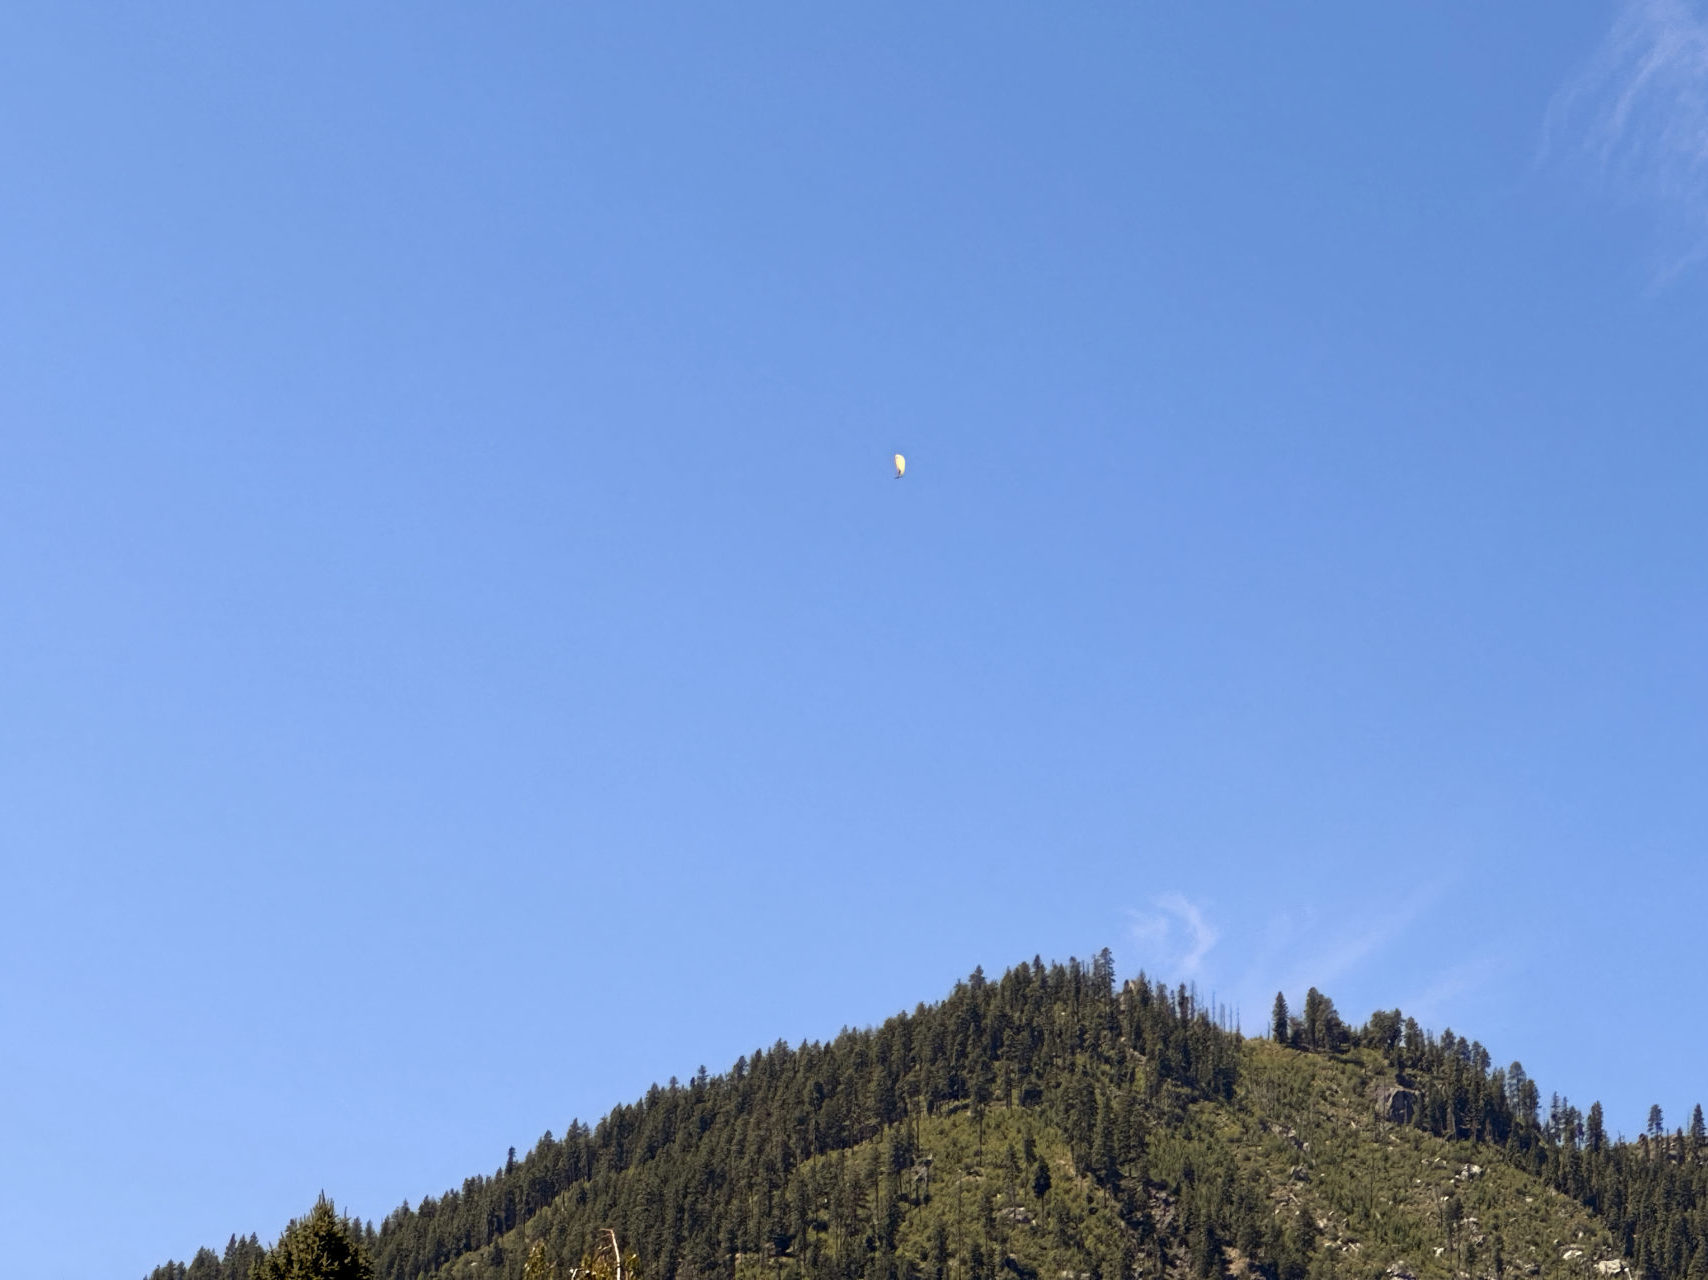 A paraglider soaring over Leavenworth, Washington